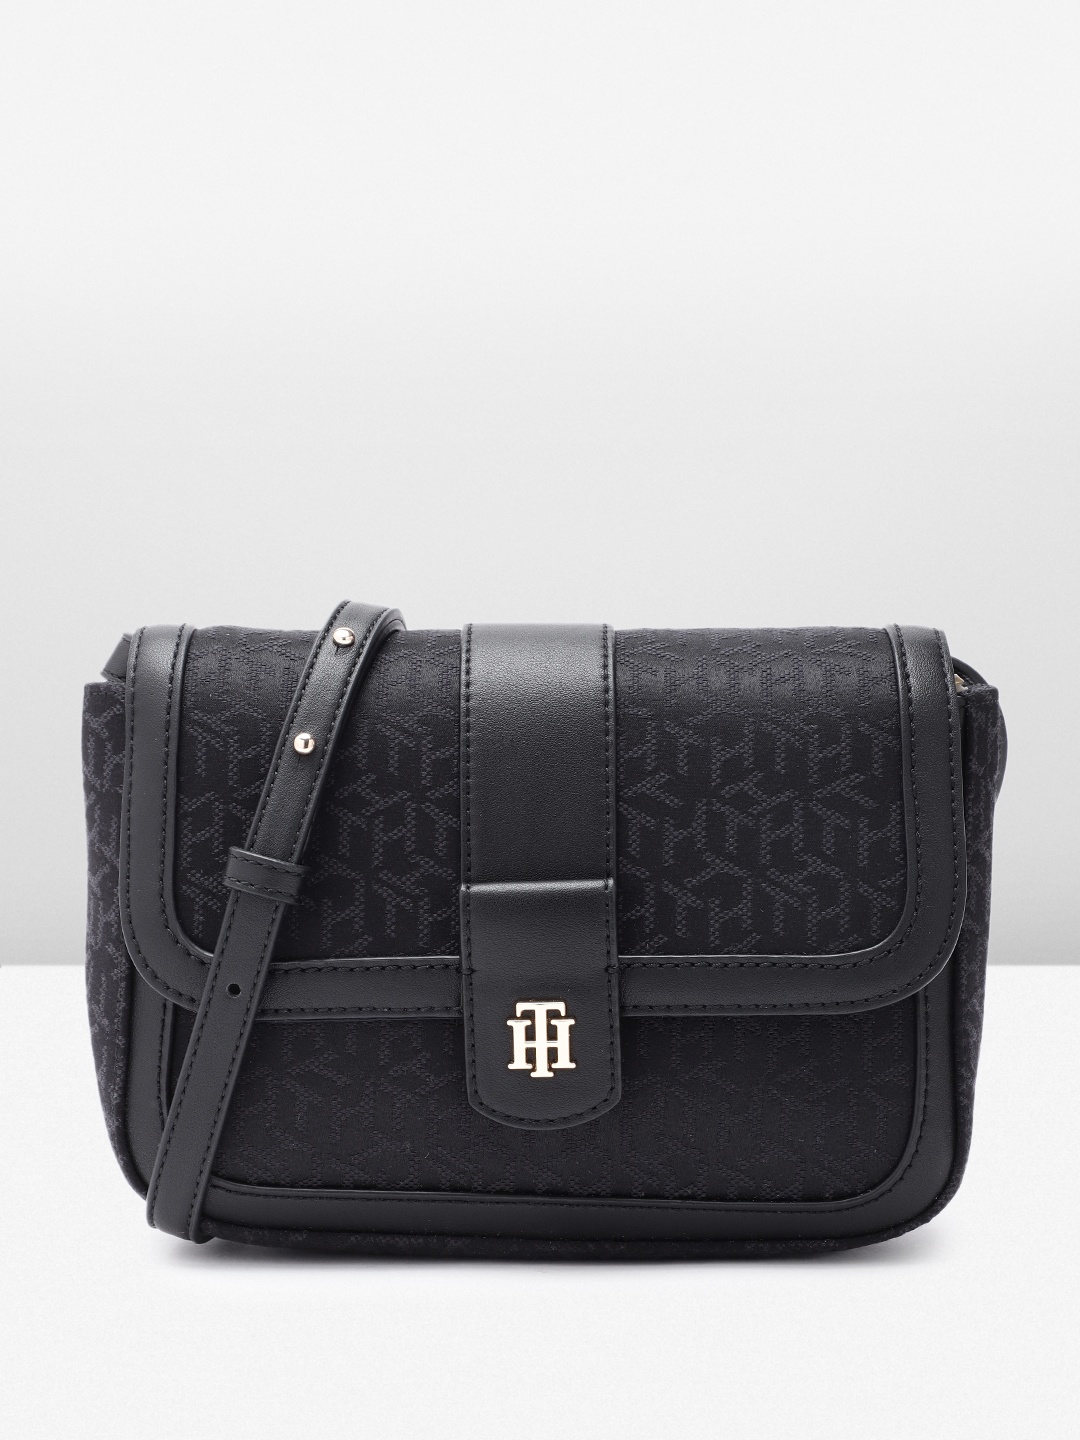 

Tommy Hilfiger Self Brand Logo Design Structured Sling Bag, Black